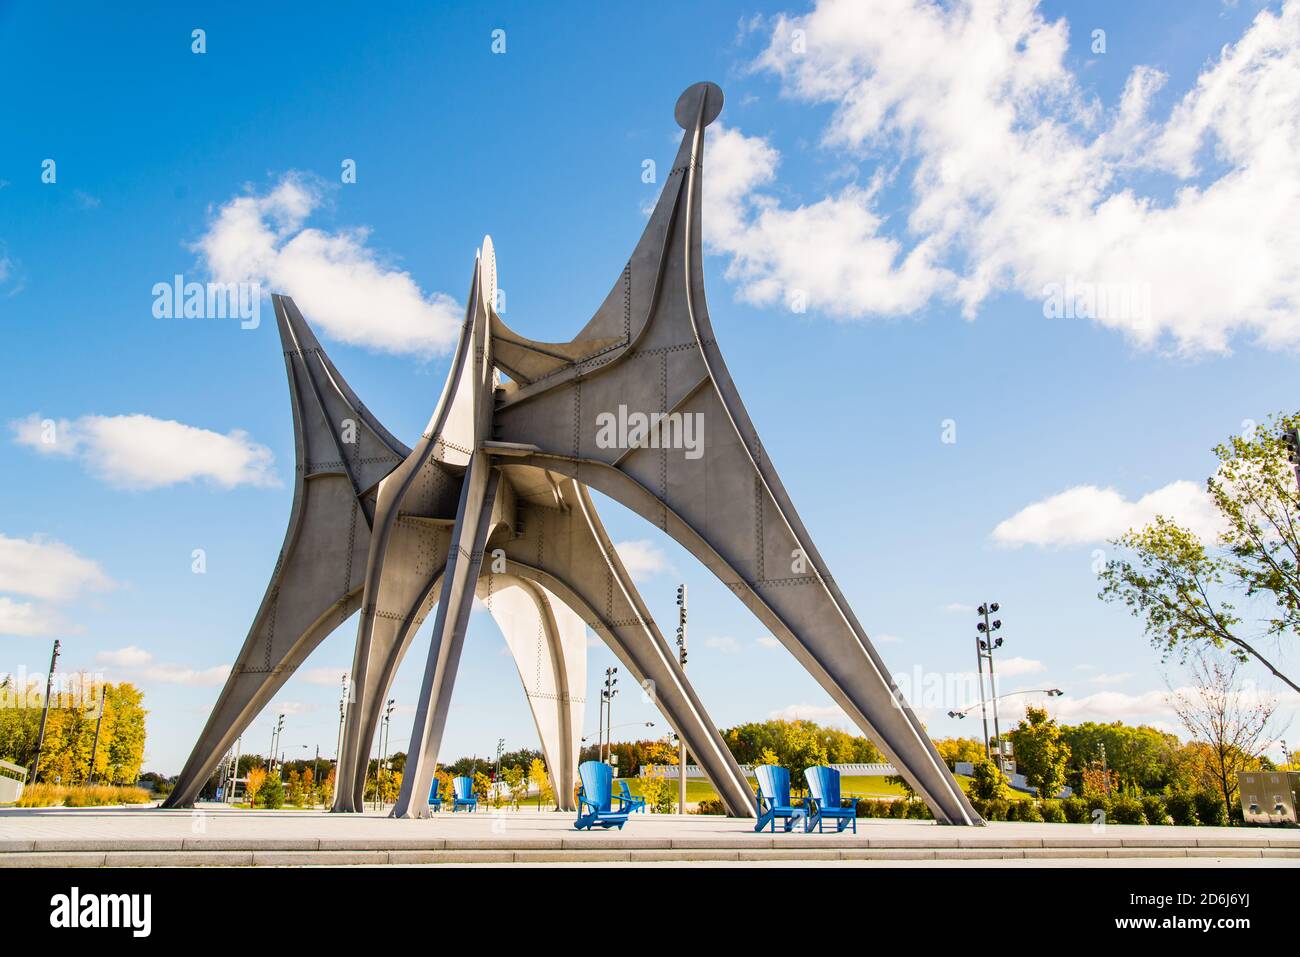 Montréal, Canada - octobre 10 2020 : perspective de trois disques Sculpture au parc Jean drapeau à Montréal Banque D'Images